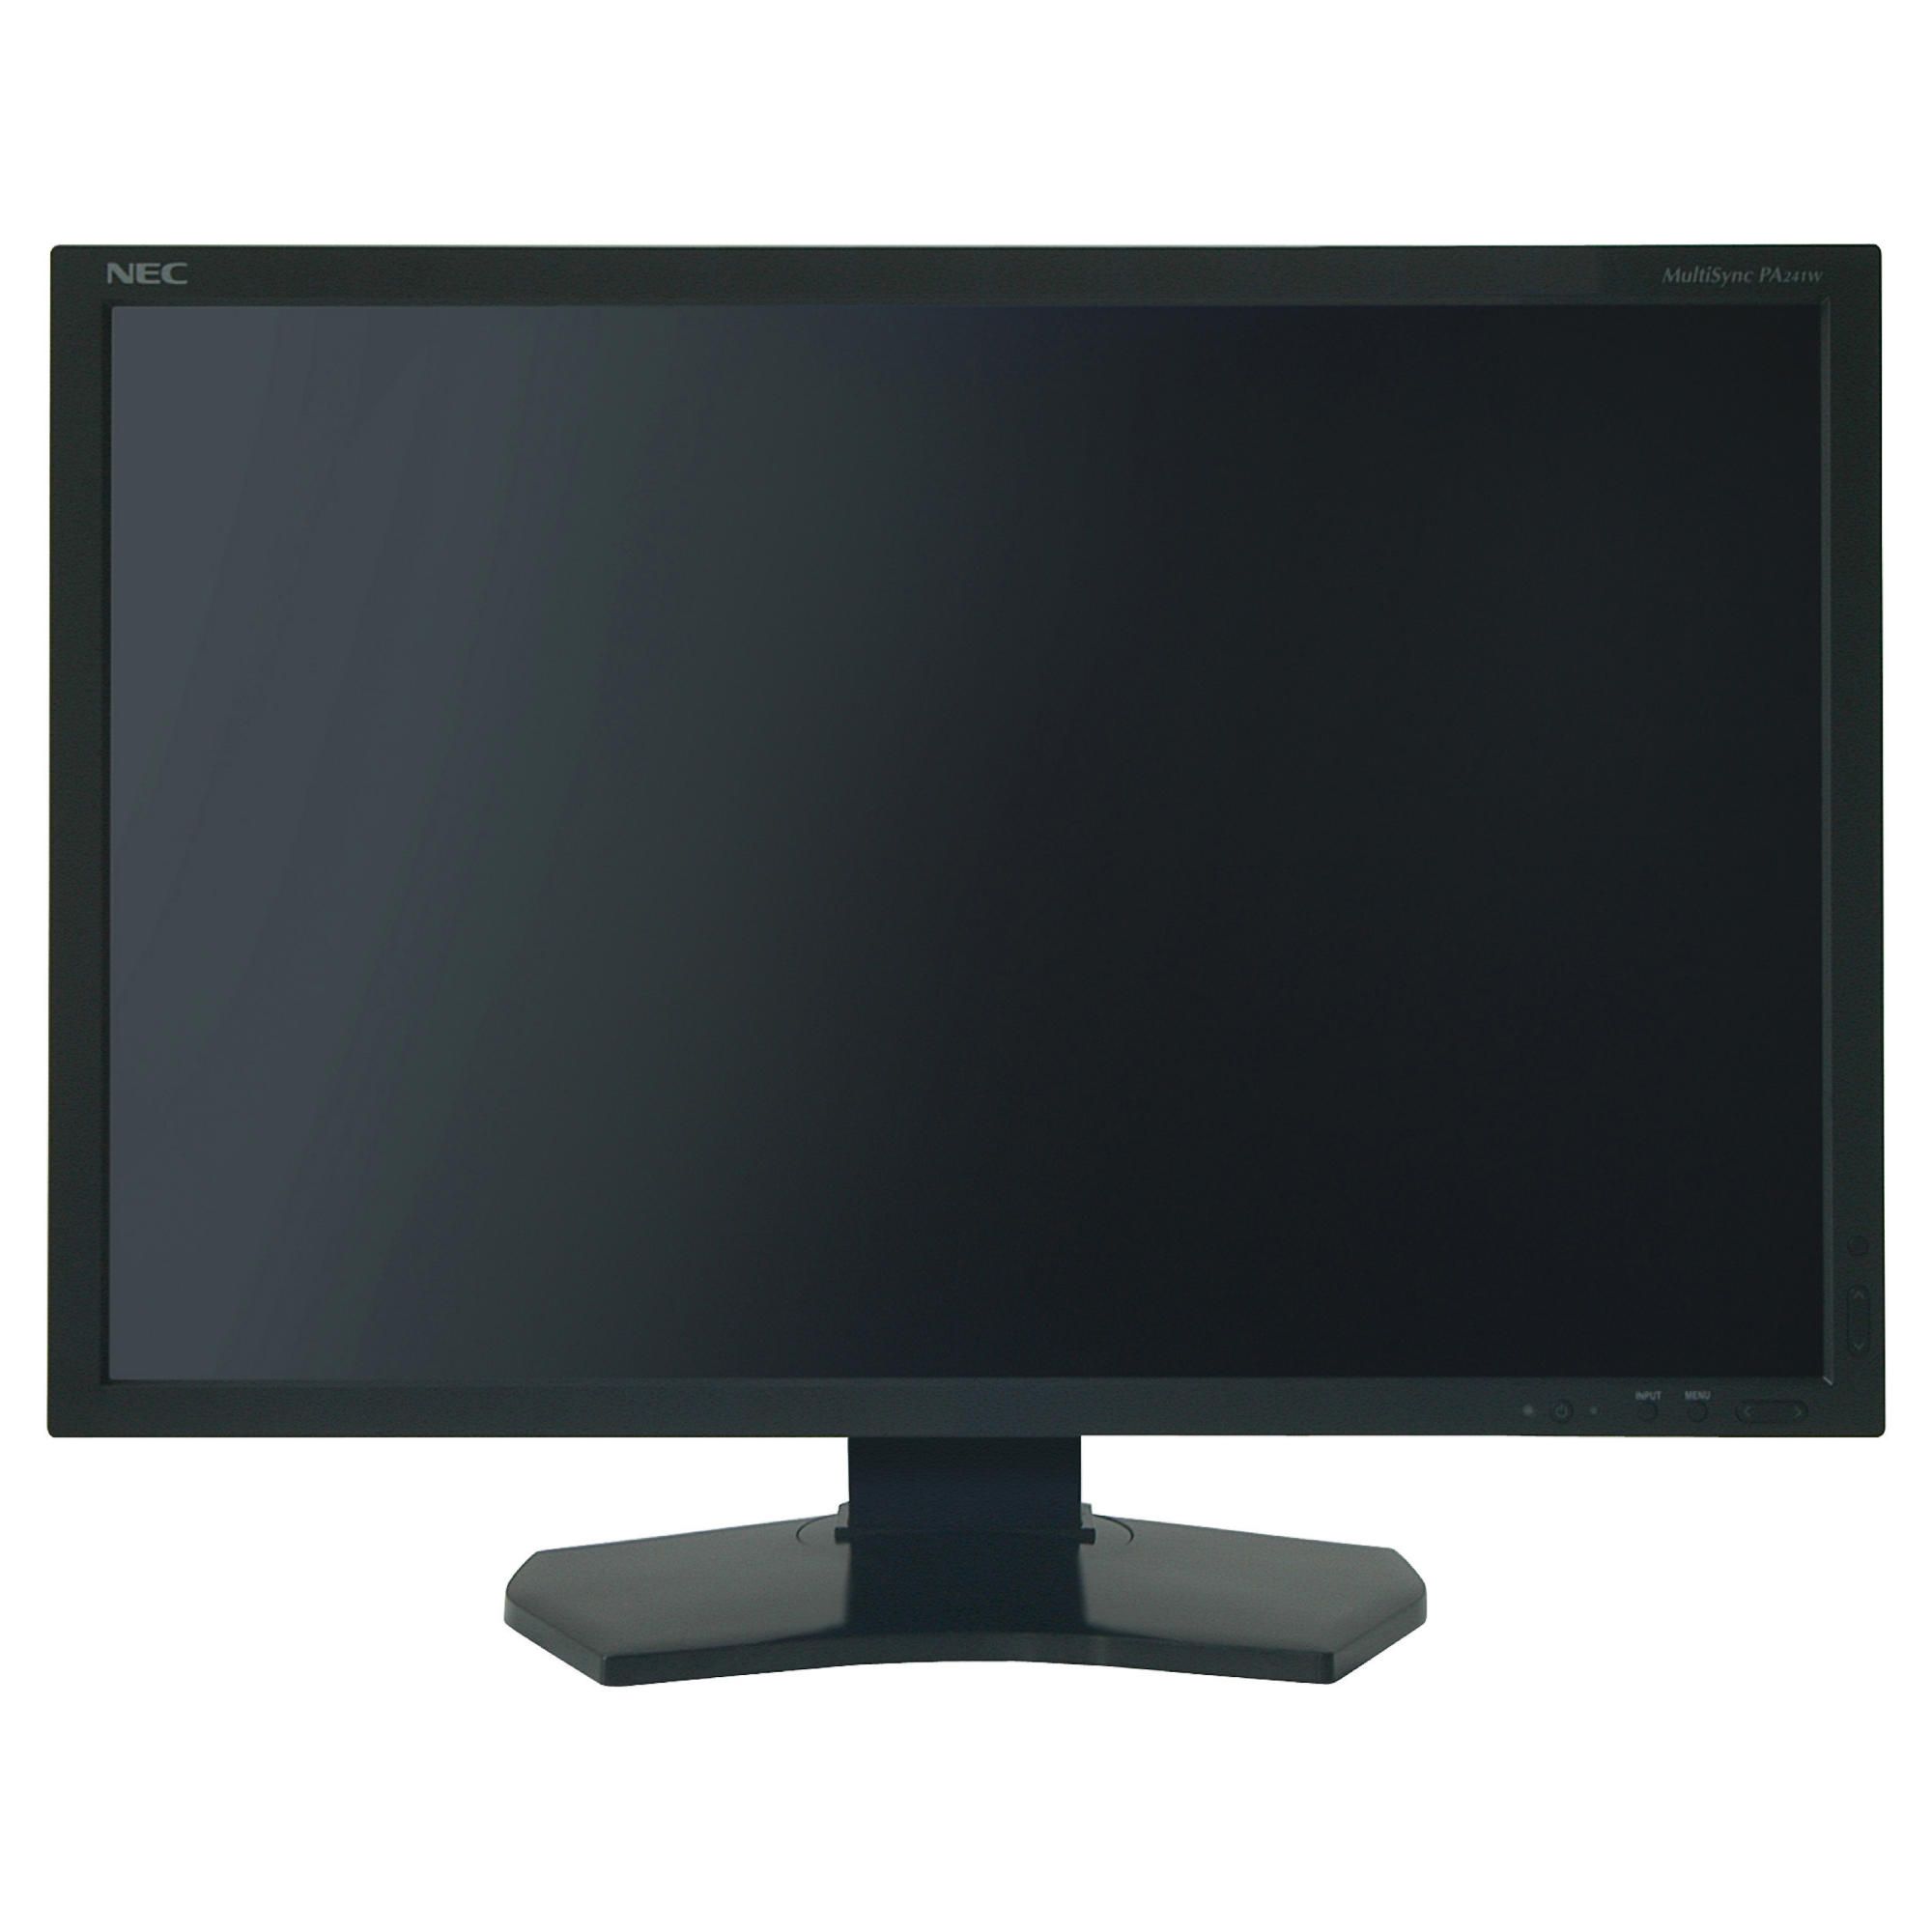 NEC PA231WB 23'' LCD Monitor Black at Tesco Direct